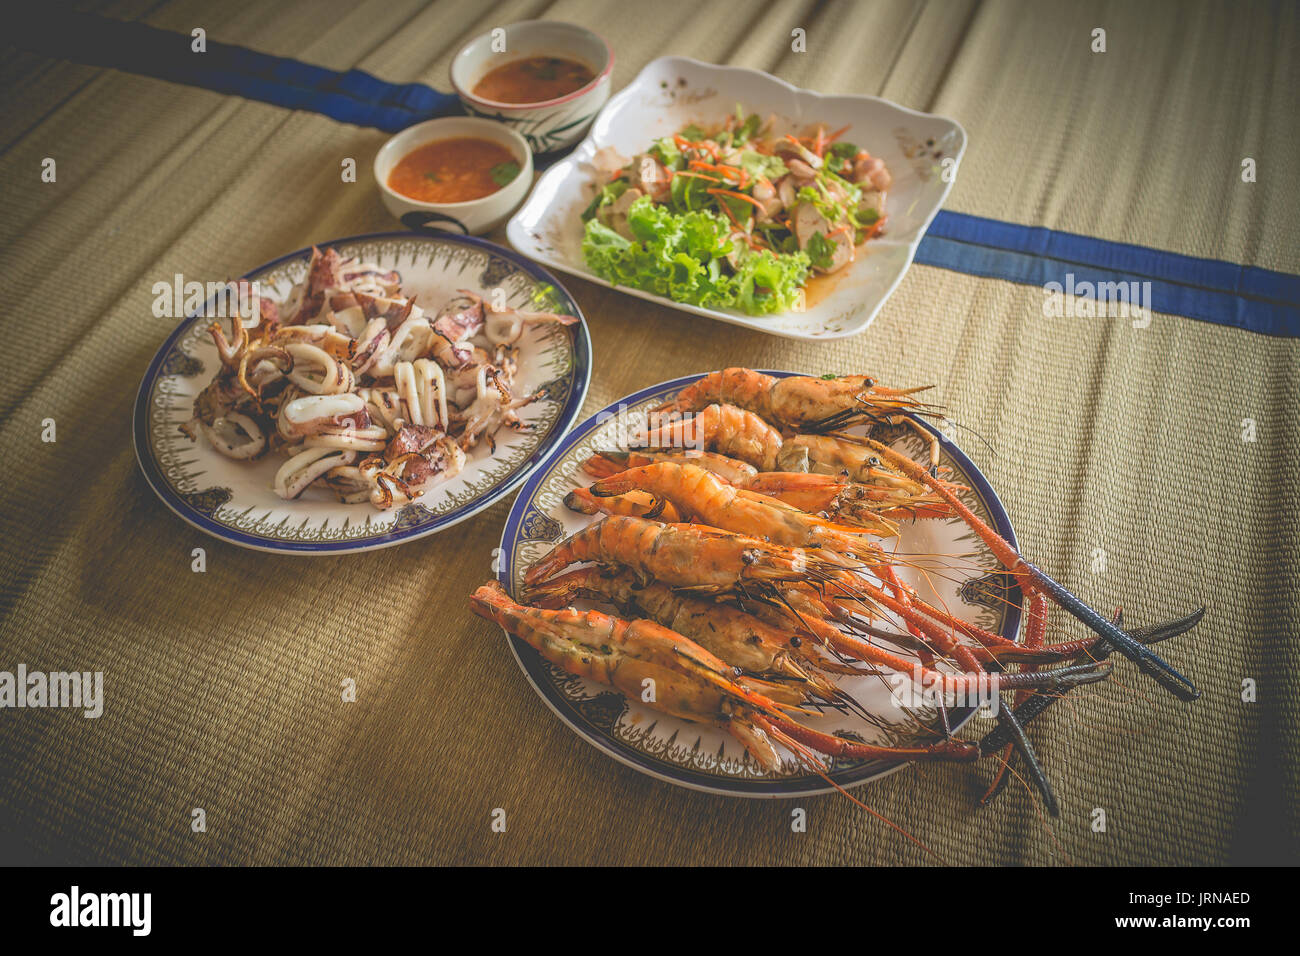 In casa il pranzo a base di pesce impostare includi le capesante alla griglia, grigliata di scampi e calamari alla griglia Foto Stock